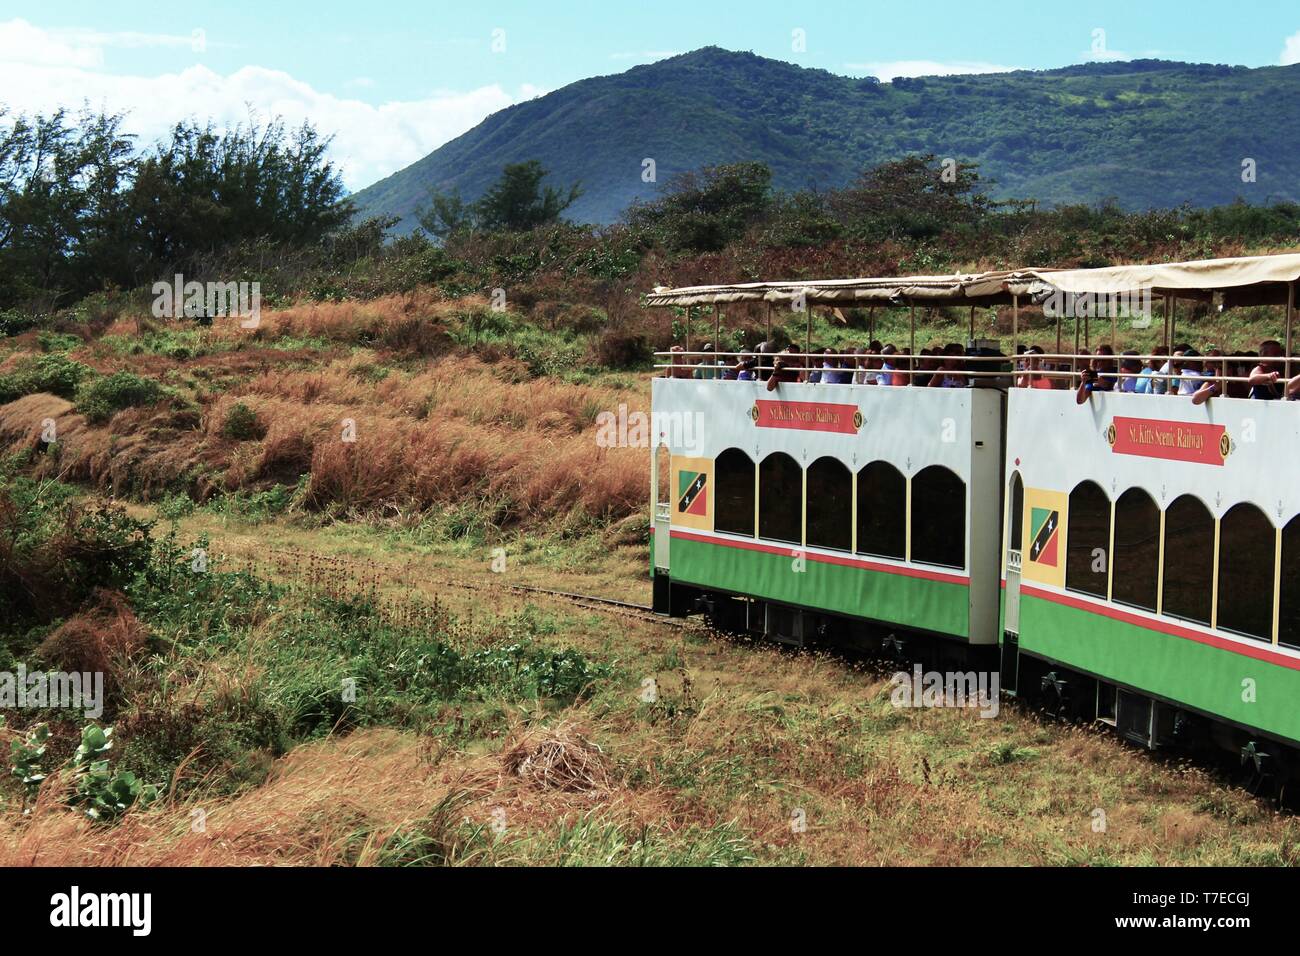 St Kitts, dei Caraibi - 1 Marzo 2018: La St Kitts Scenic Railway attrazione turistica viaggia attraverso la campagna piena di visite turistiche turisti. Foto Stock